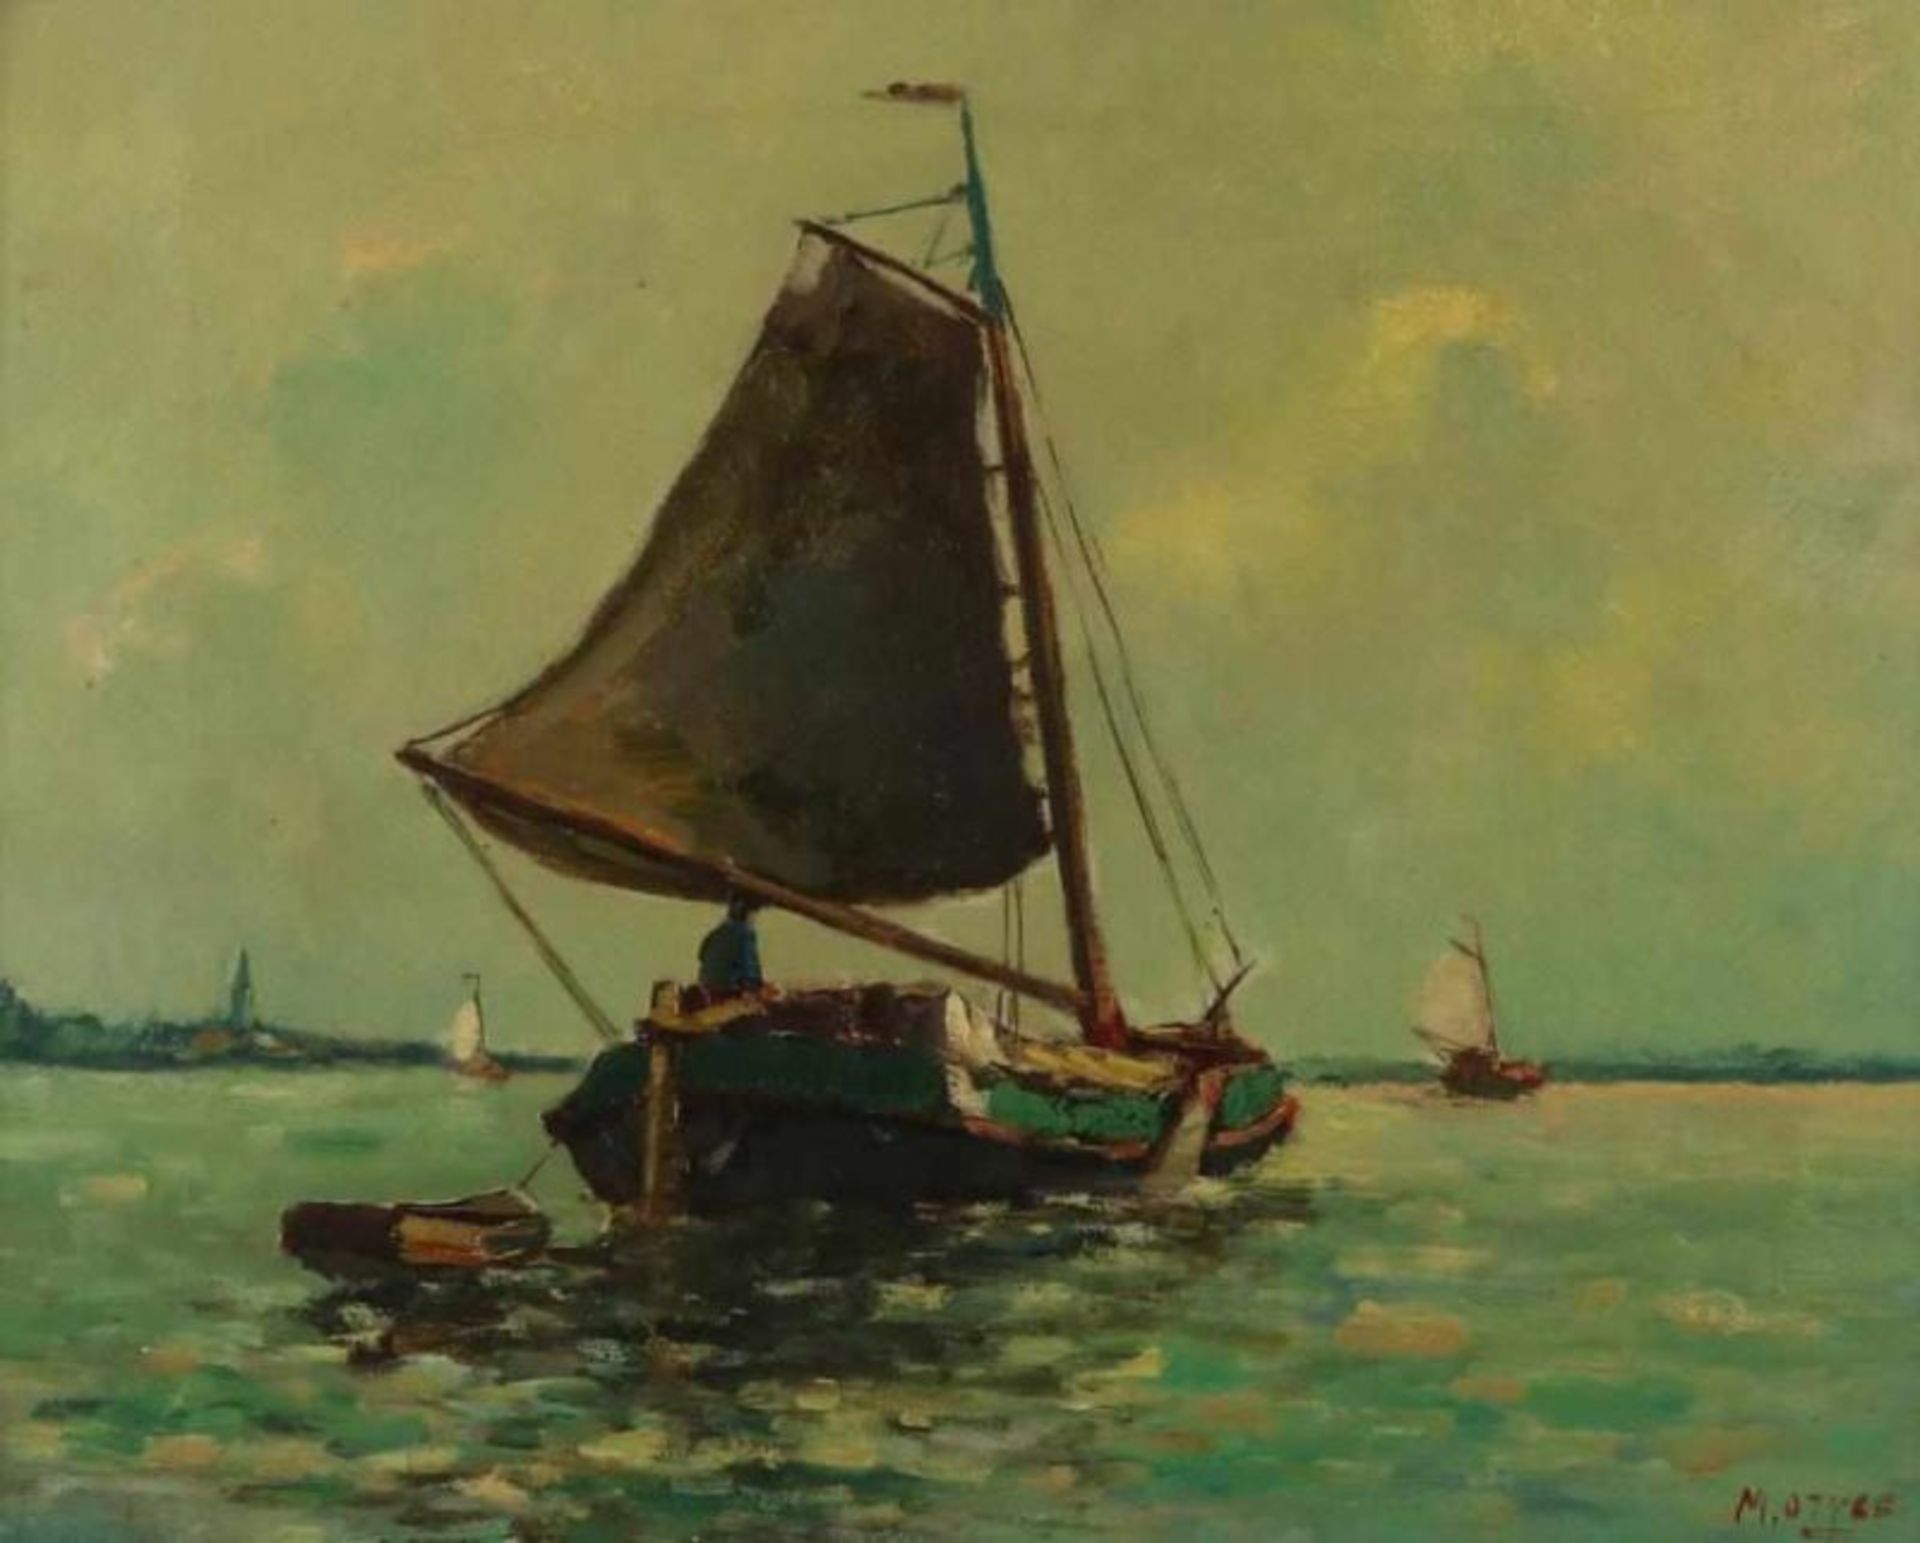 OTTEE MARK (189801982), ges. r.o. zeilboot, doek 38 x 48 cm.